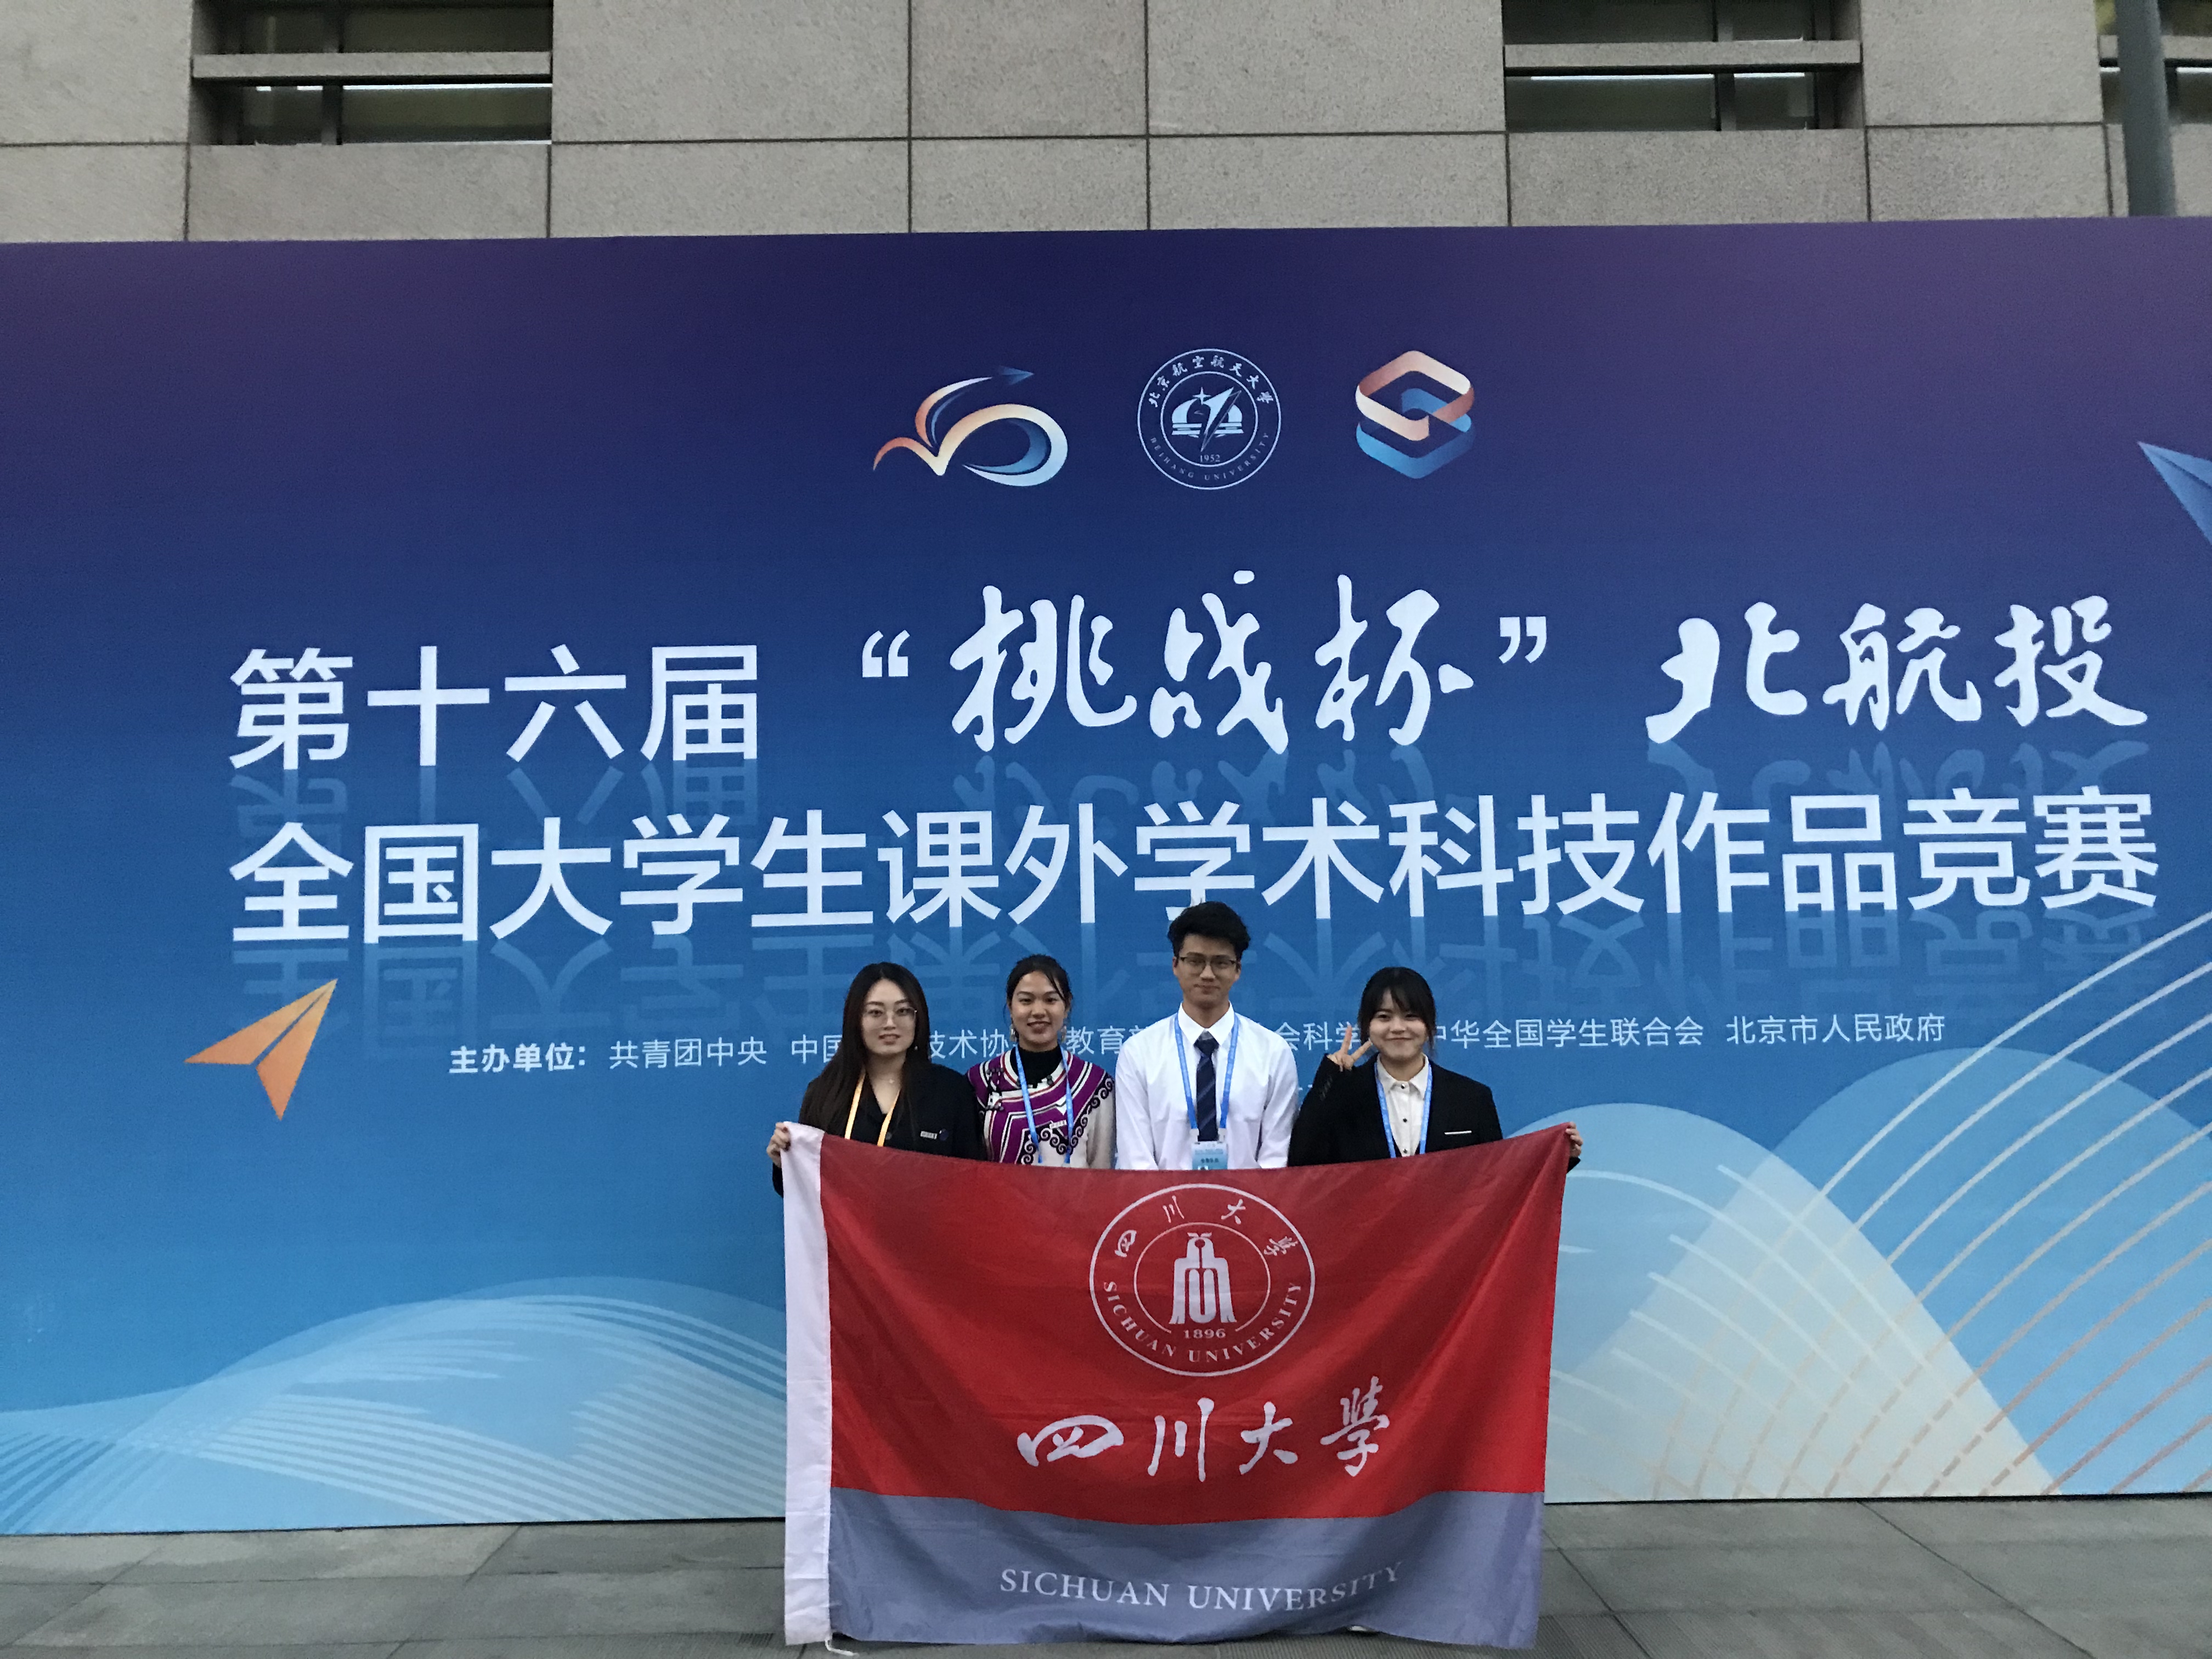 四川大学将承办第十七届挑战杯全国大学生课外学术科技作品竞赛